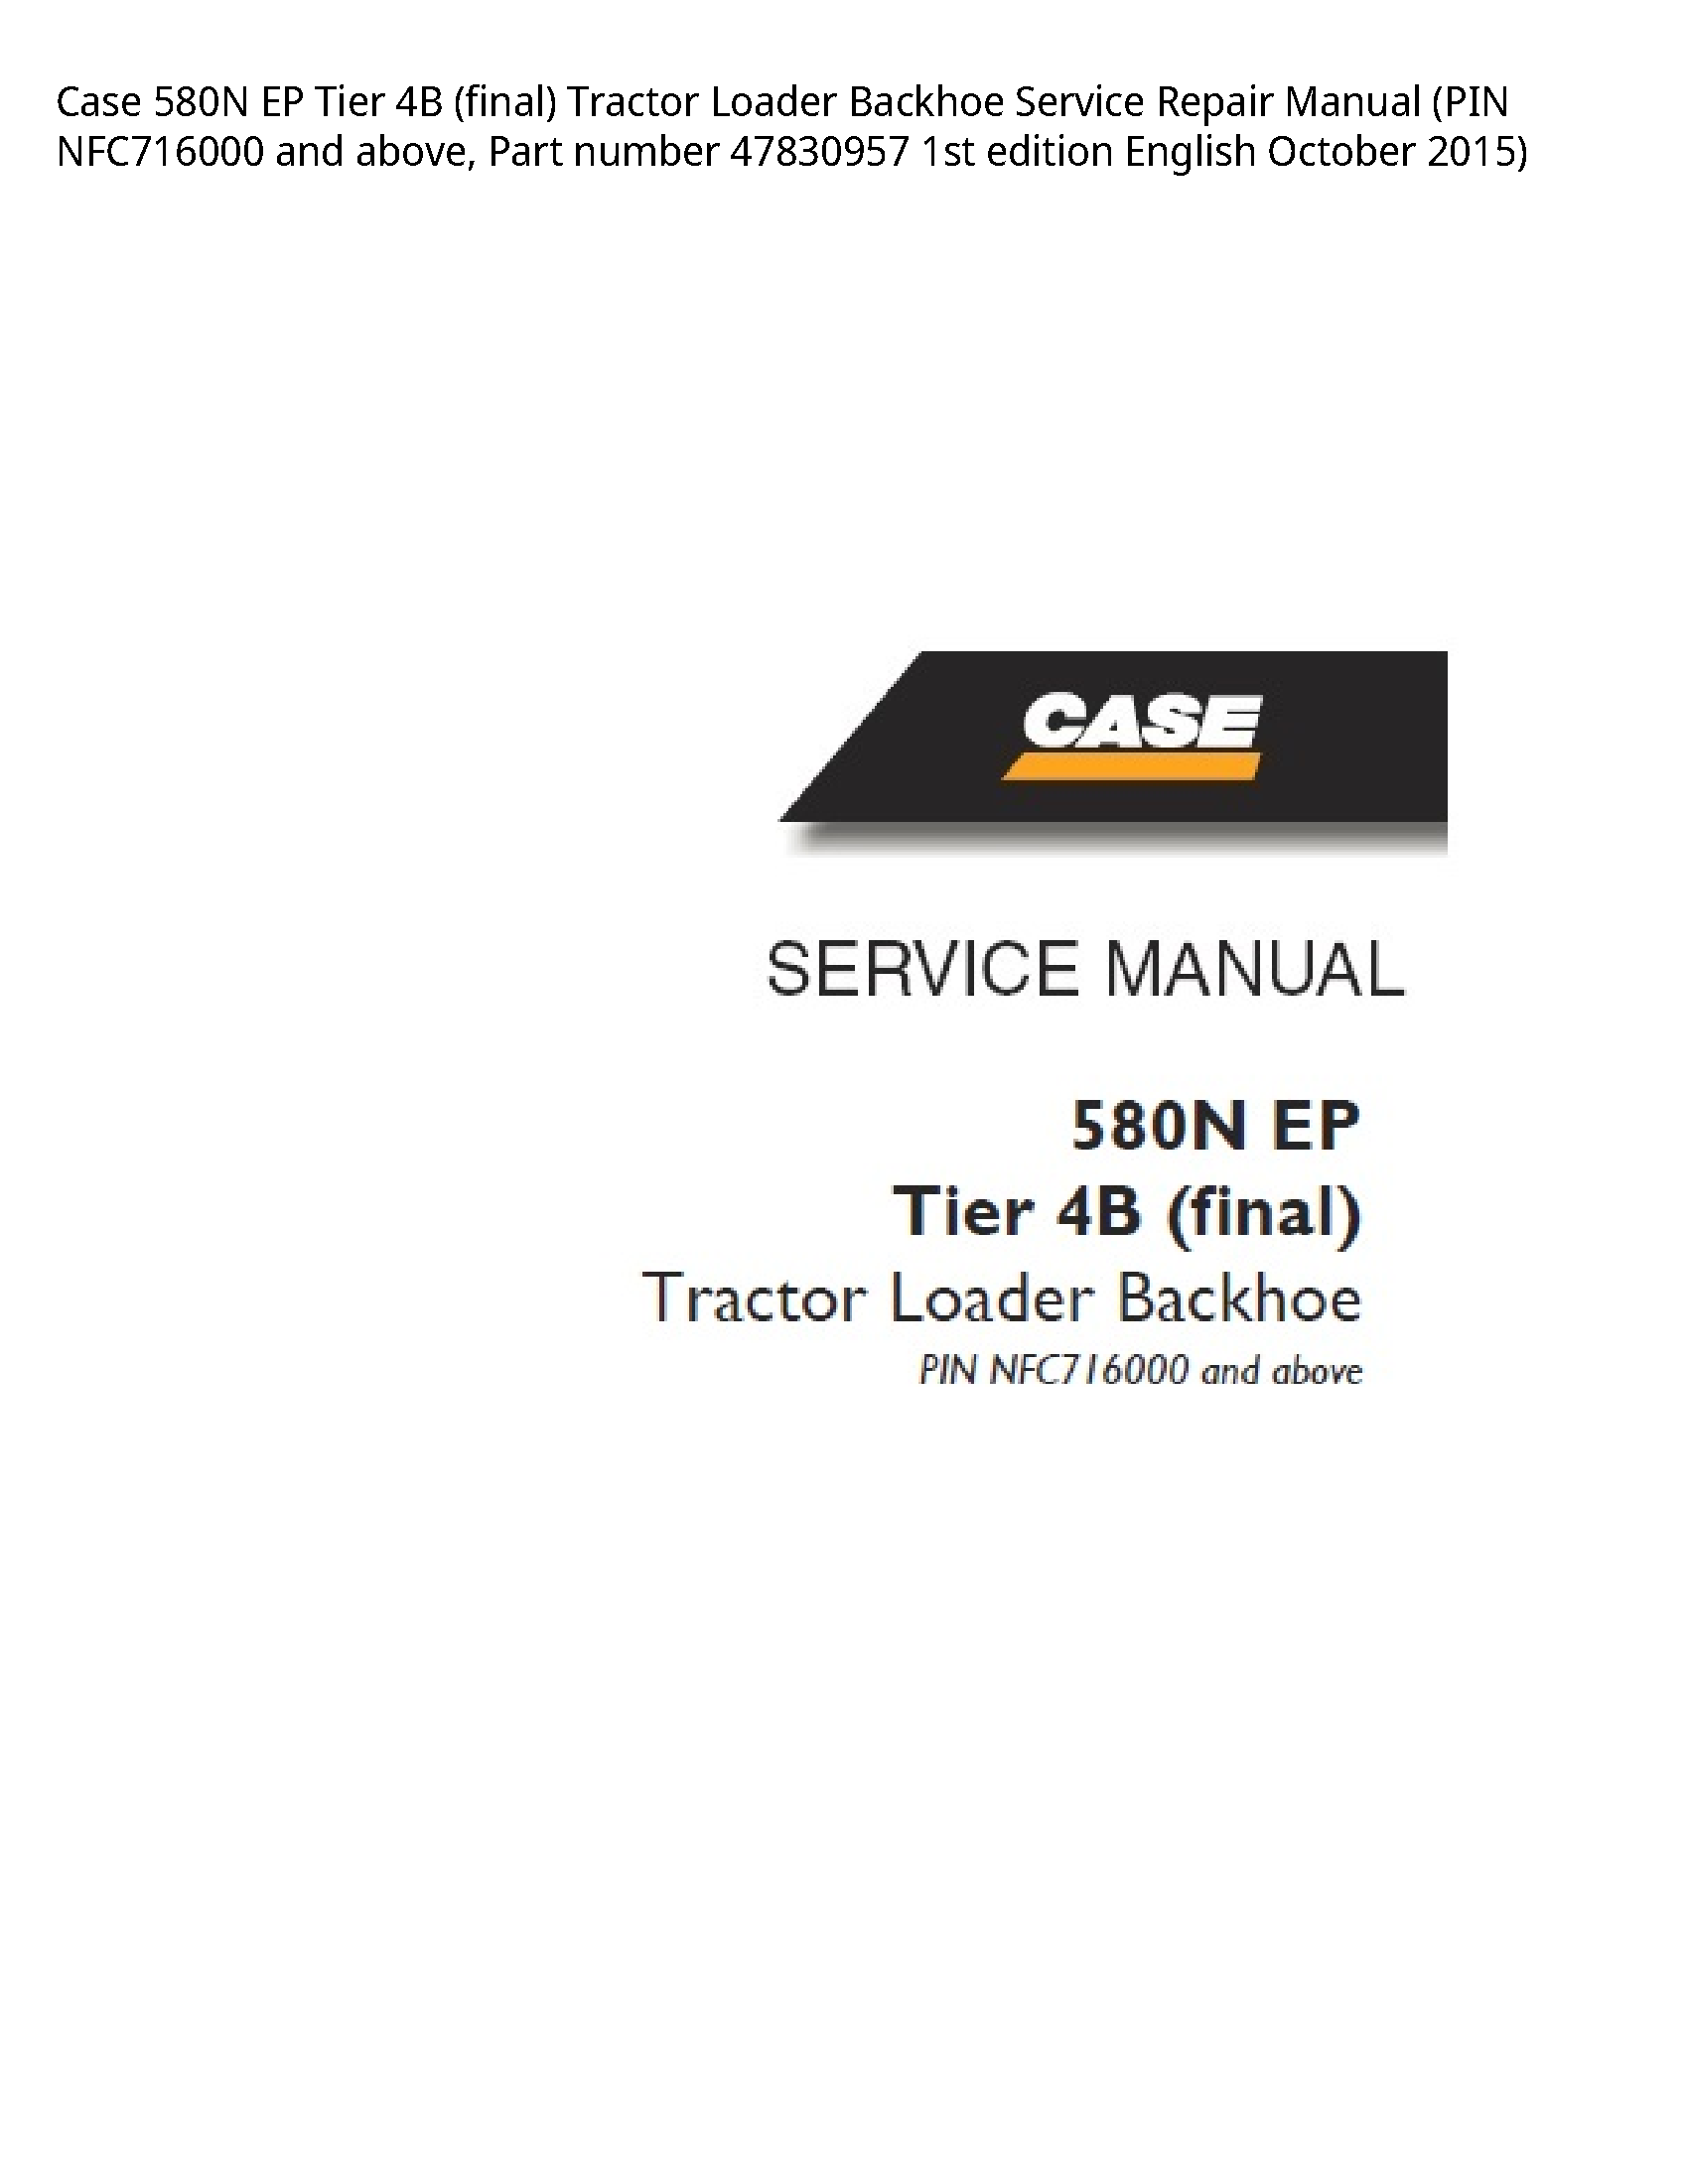 Case/Case IH 580N EP Tier (final) Tractor Loader Backhoe manual